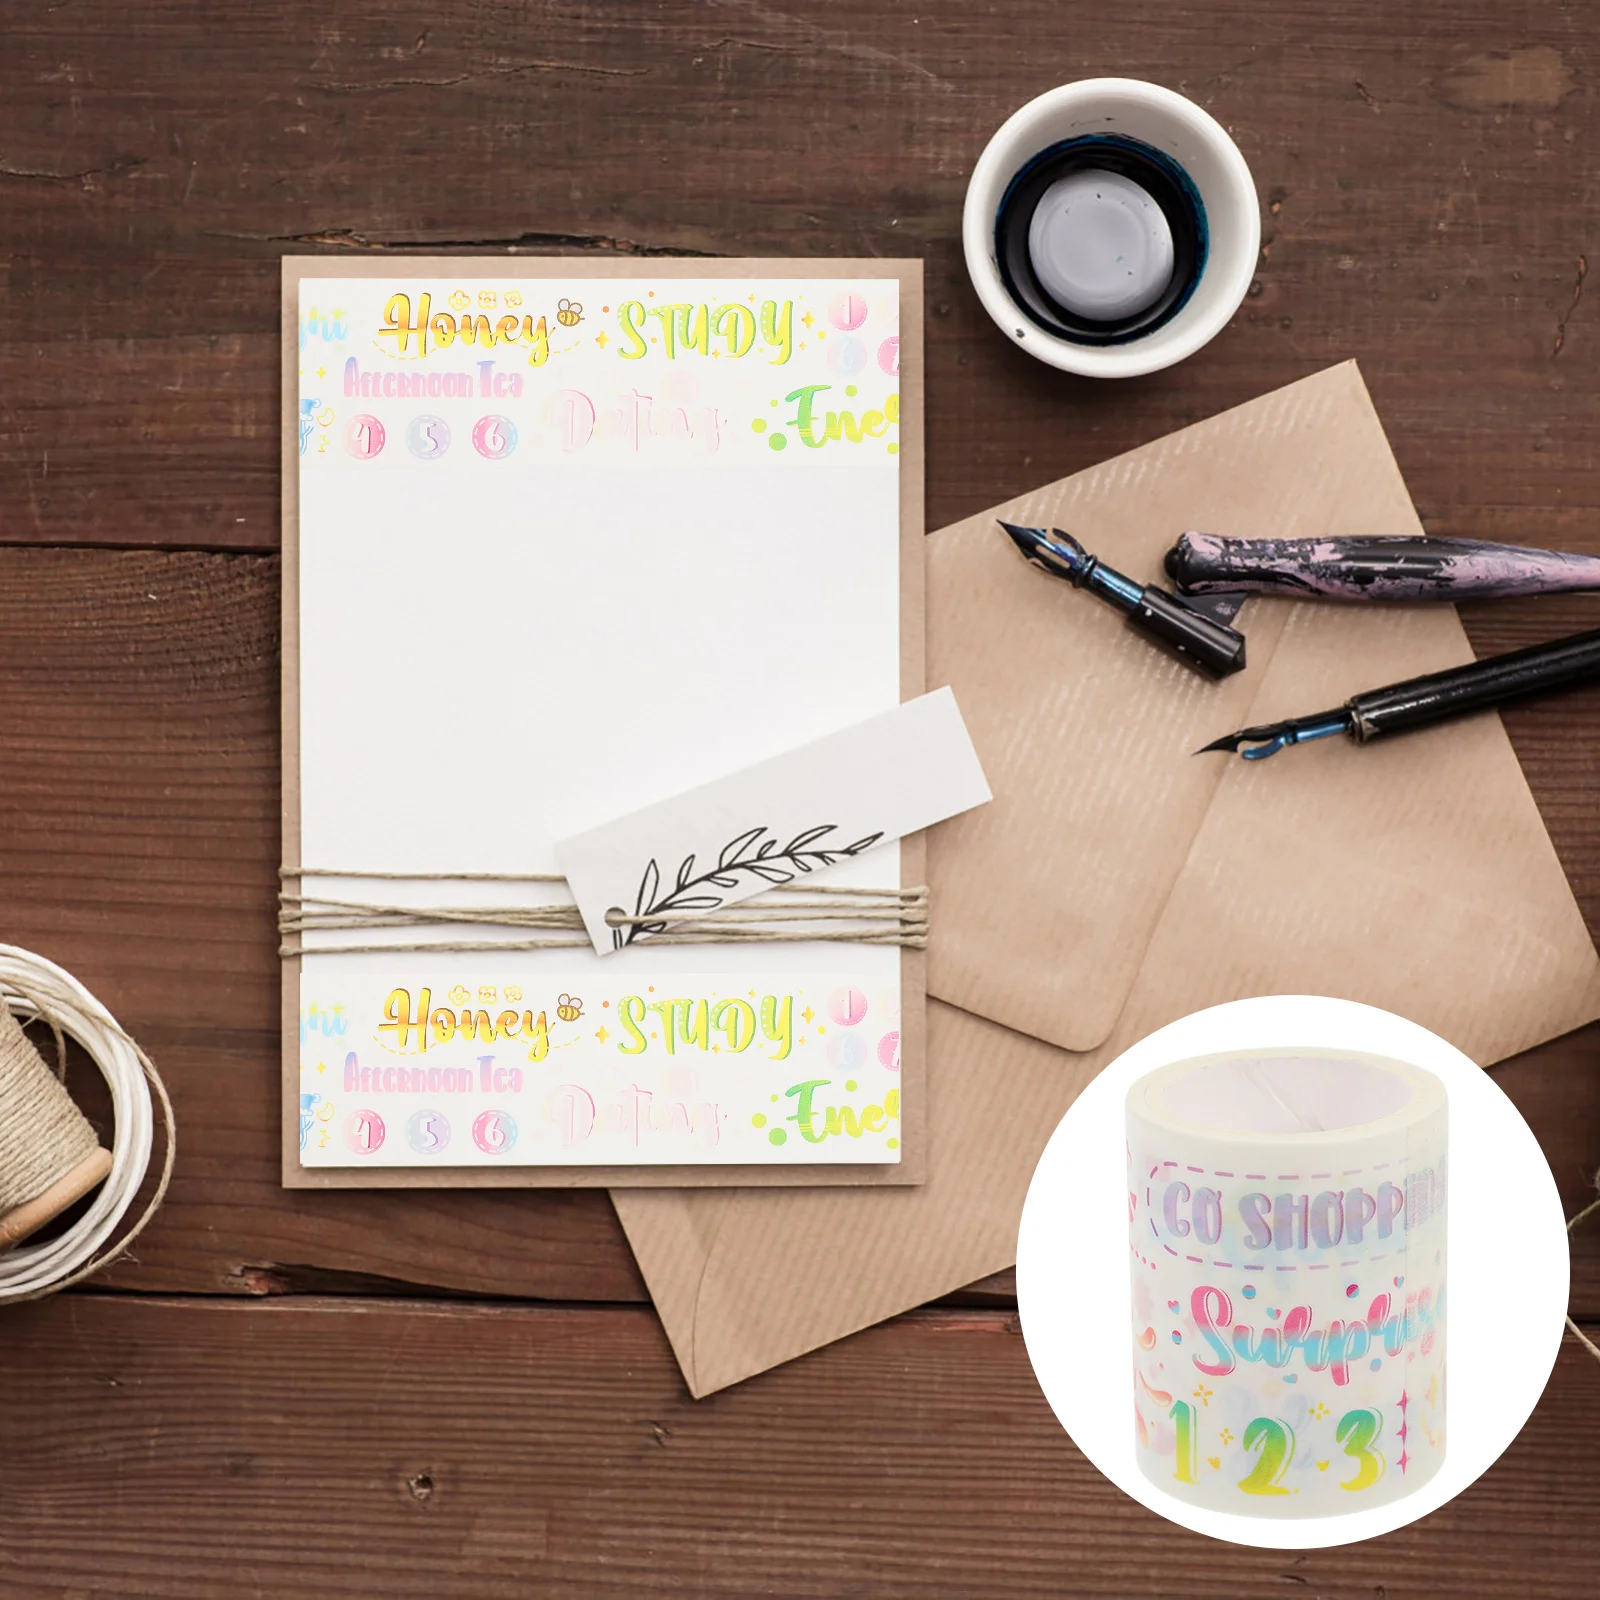 

Бумажная лента Washi декоративные ленты, клейкая лента для обмотки книг, альбомов, букв, ежедневников, геометрического дизайна